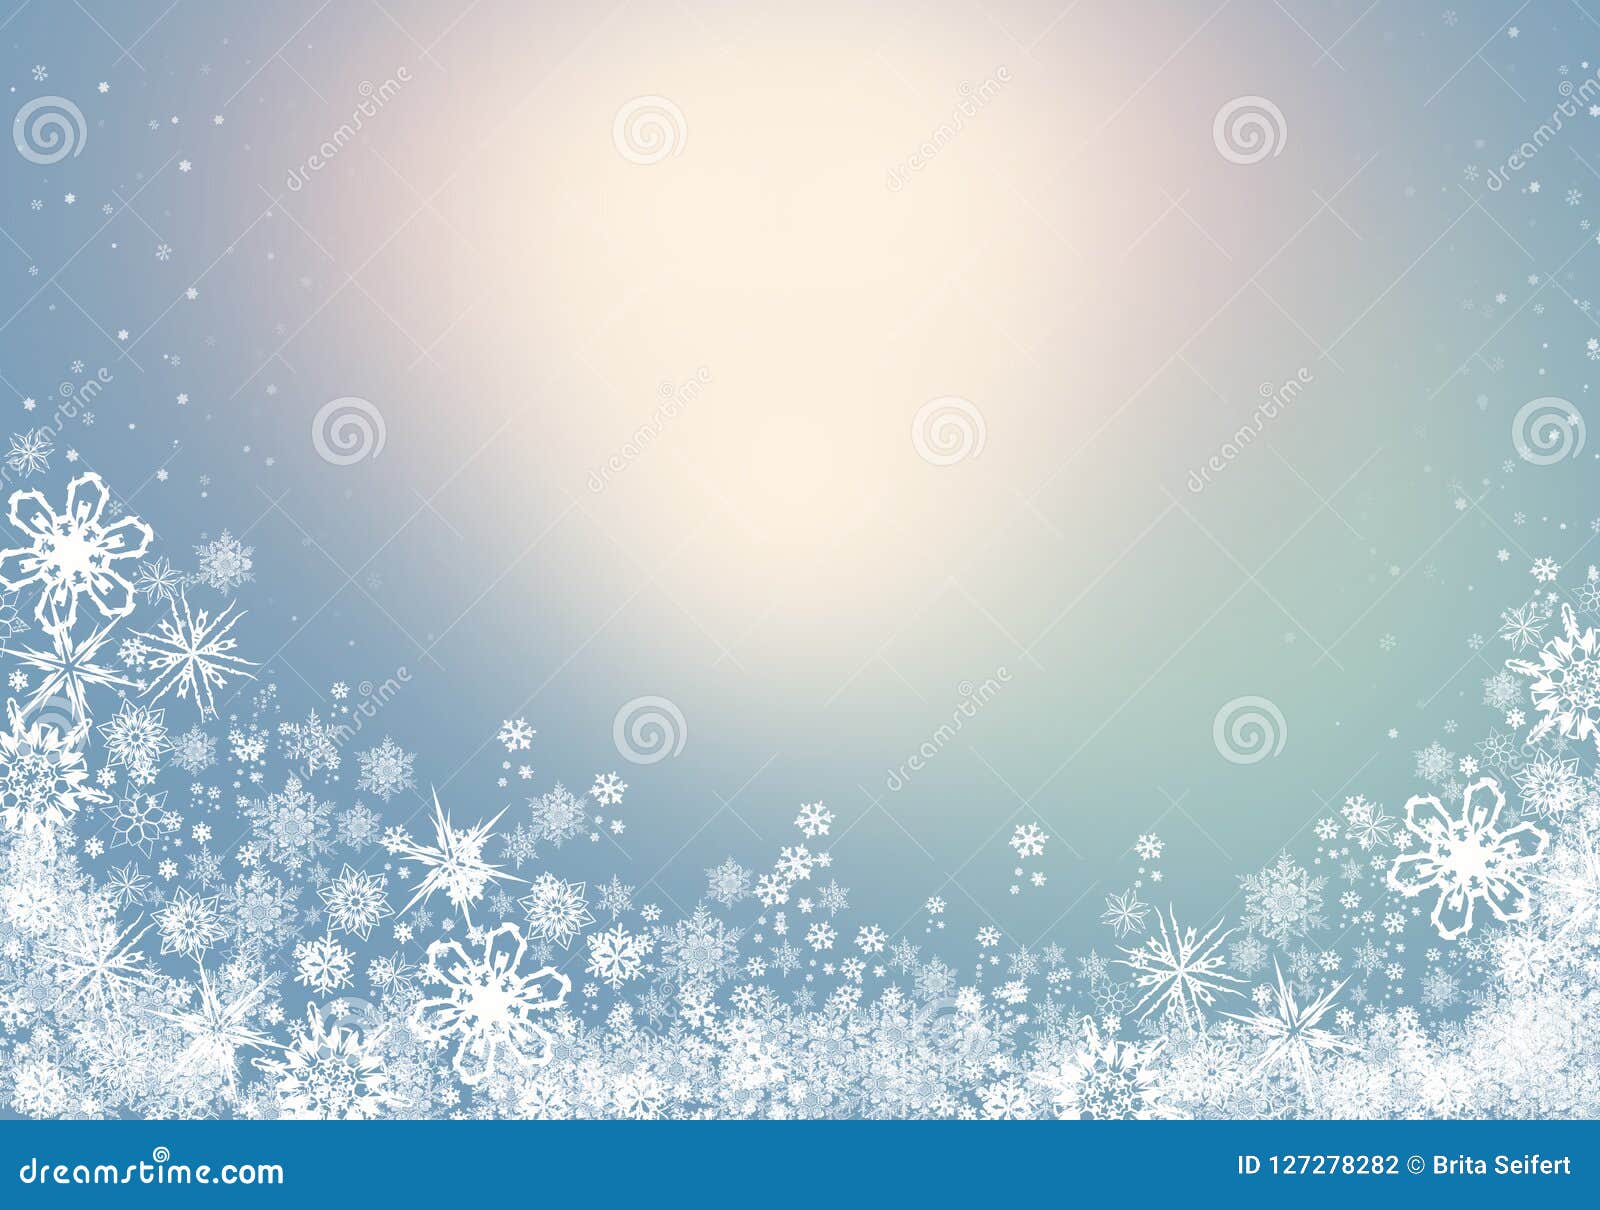 Μπλε χειμερινό υπόβαθρο με snowflakes για τις δημιουργίες σας